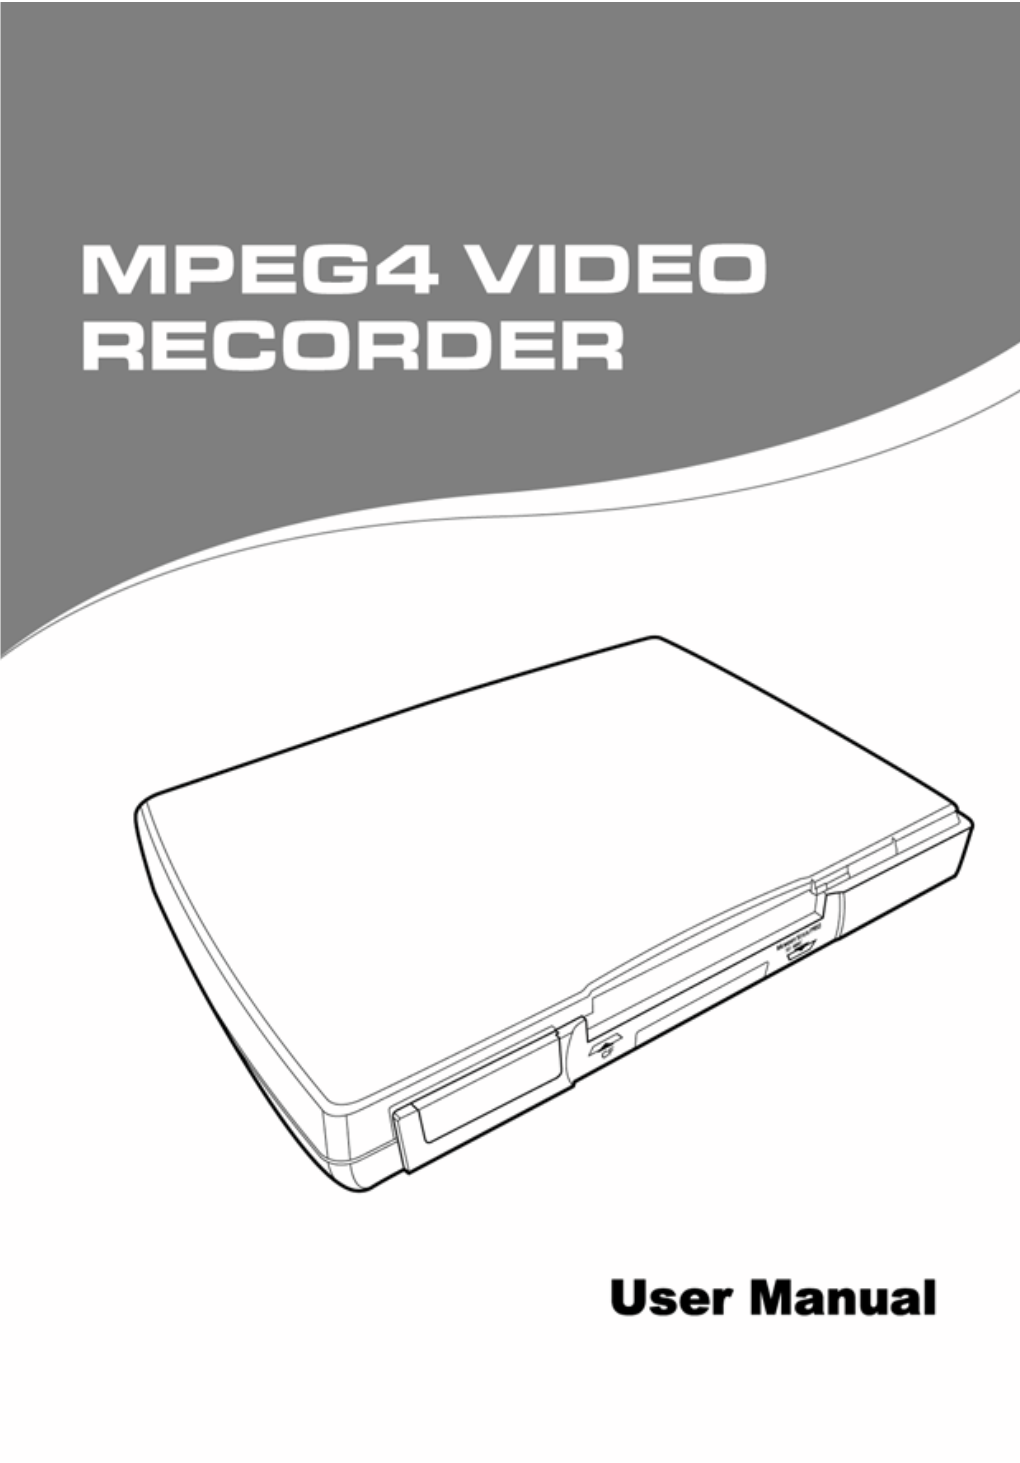 MPEG-4 Video Recorder UM EN.Book Page I Thursday, June 22, 2006 2:14 PM MPEG-4 Video Recorder UM EN.Book Page Ii Thursday, June 22, 2006 2:14 PM